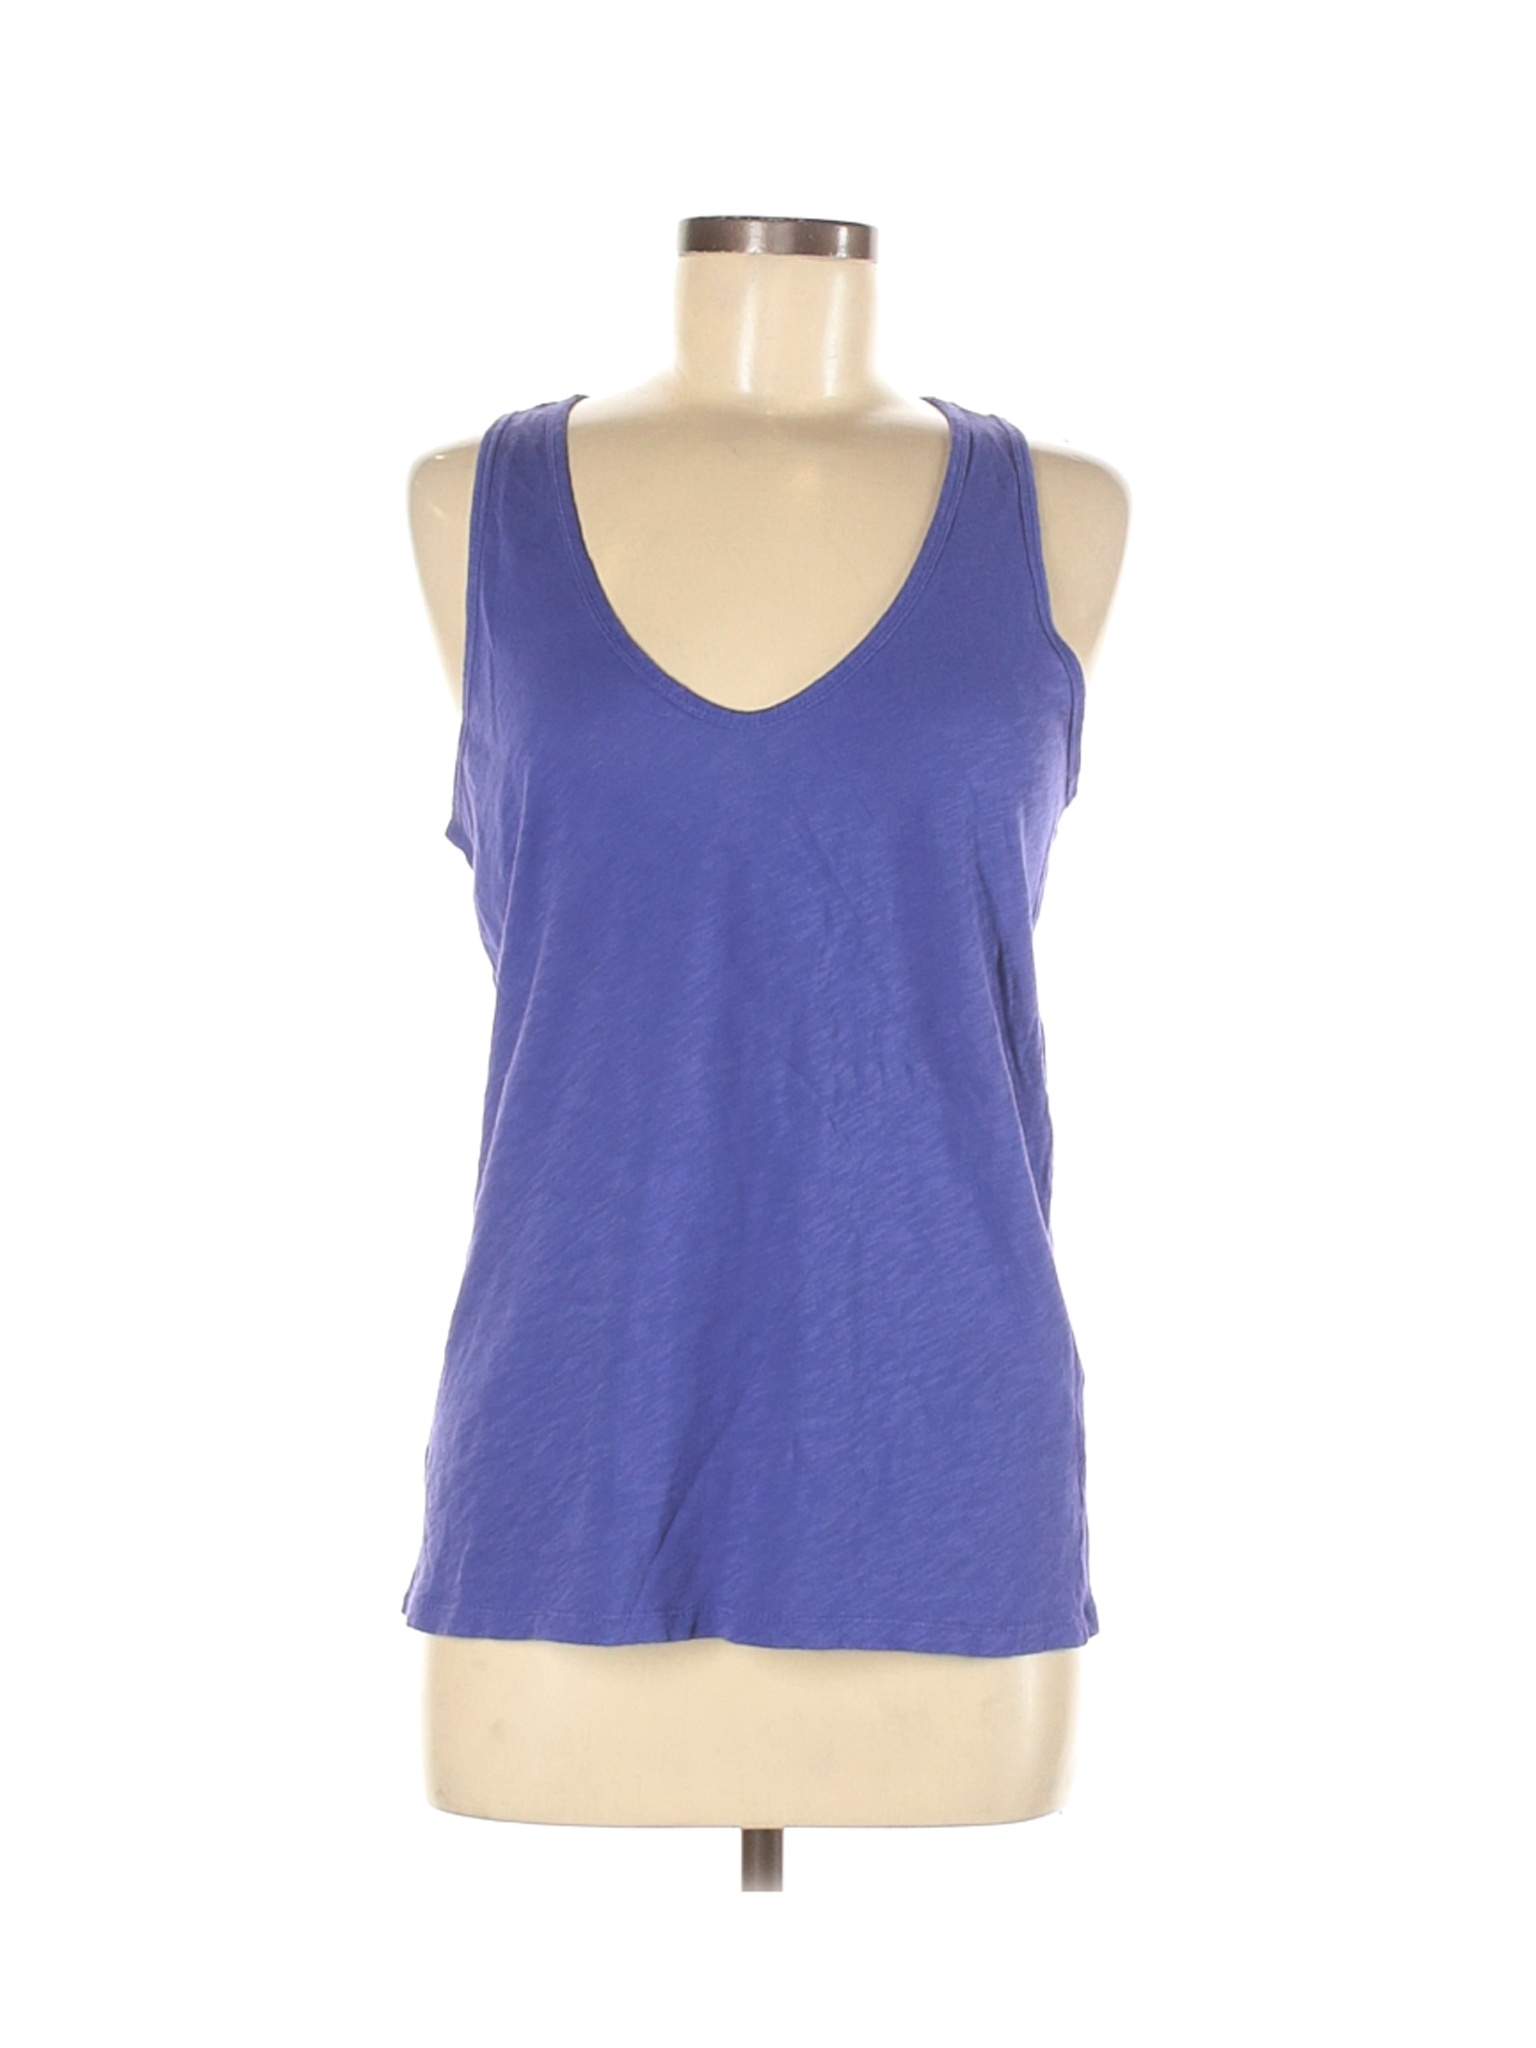 J.Crew Women Purple Sleeveless T-Shirt M | eBay